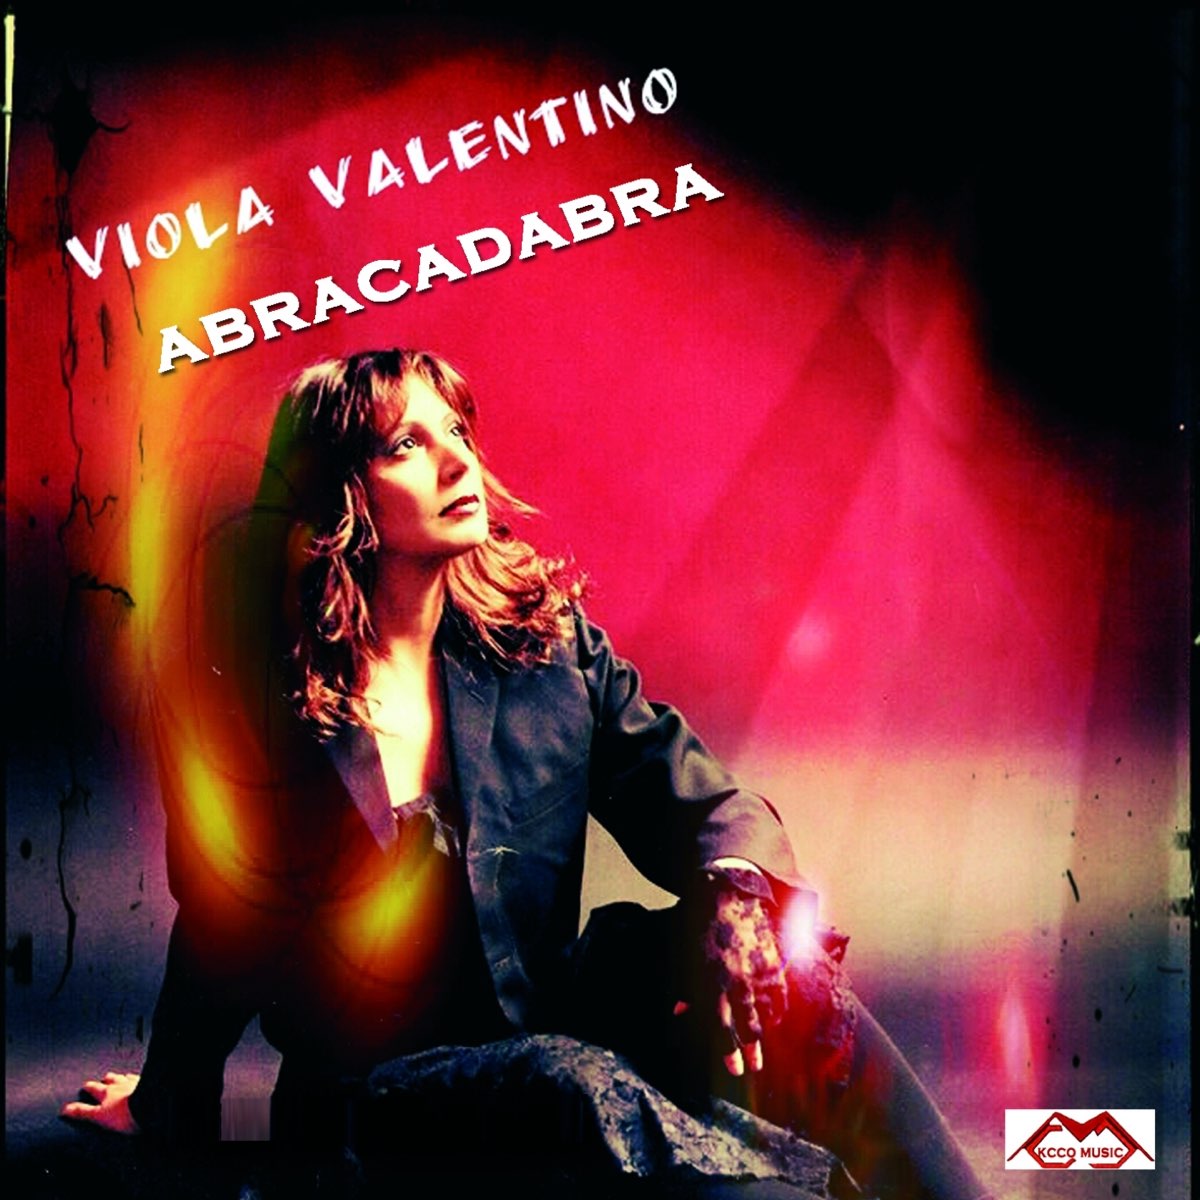 Viola песня на французском. Виола Валентино. Виола Валентино романтичи. Виола Валентино альбом. Viola Valentino - альбом Cinema.